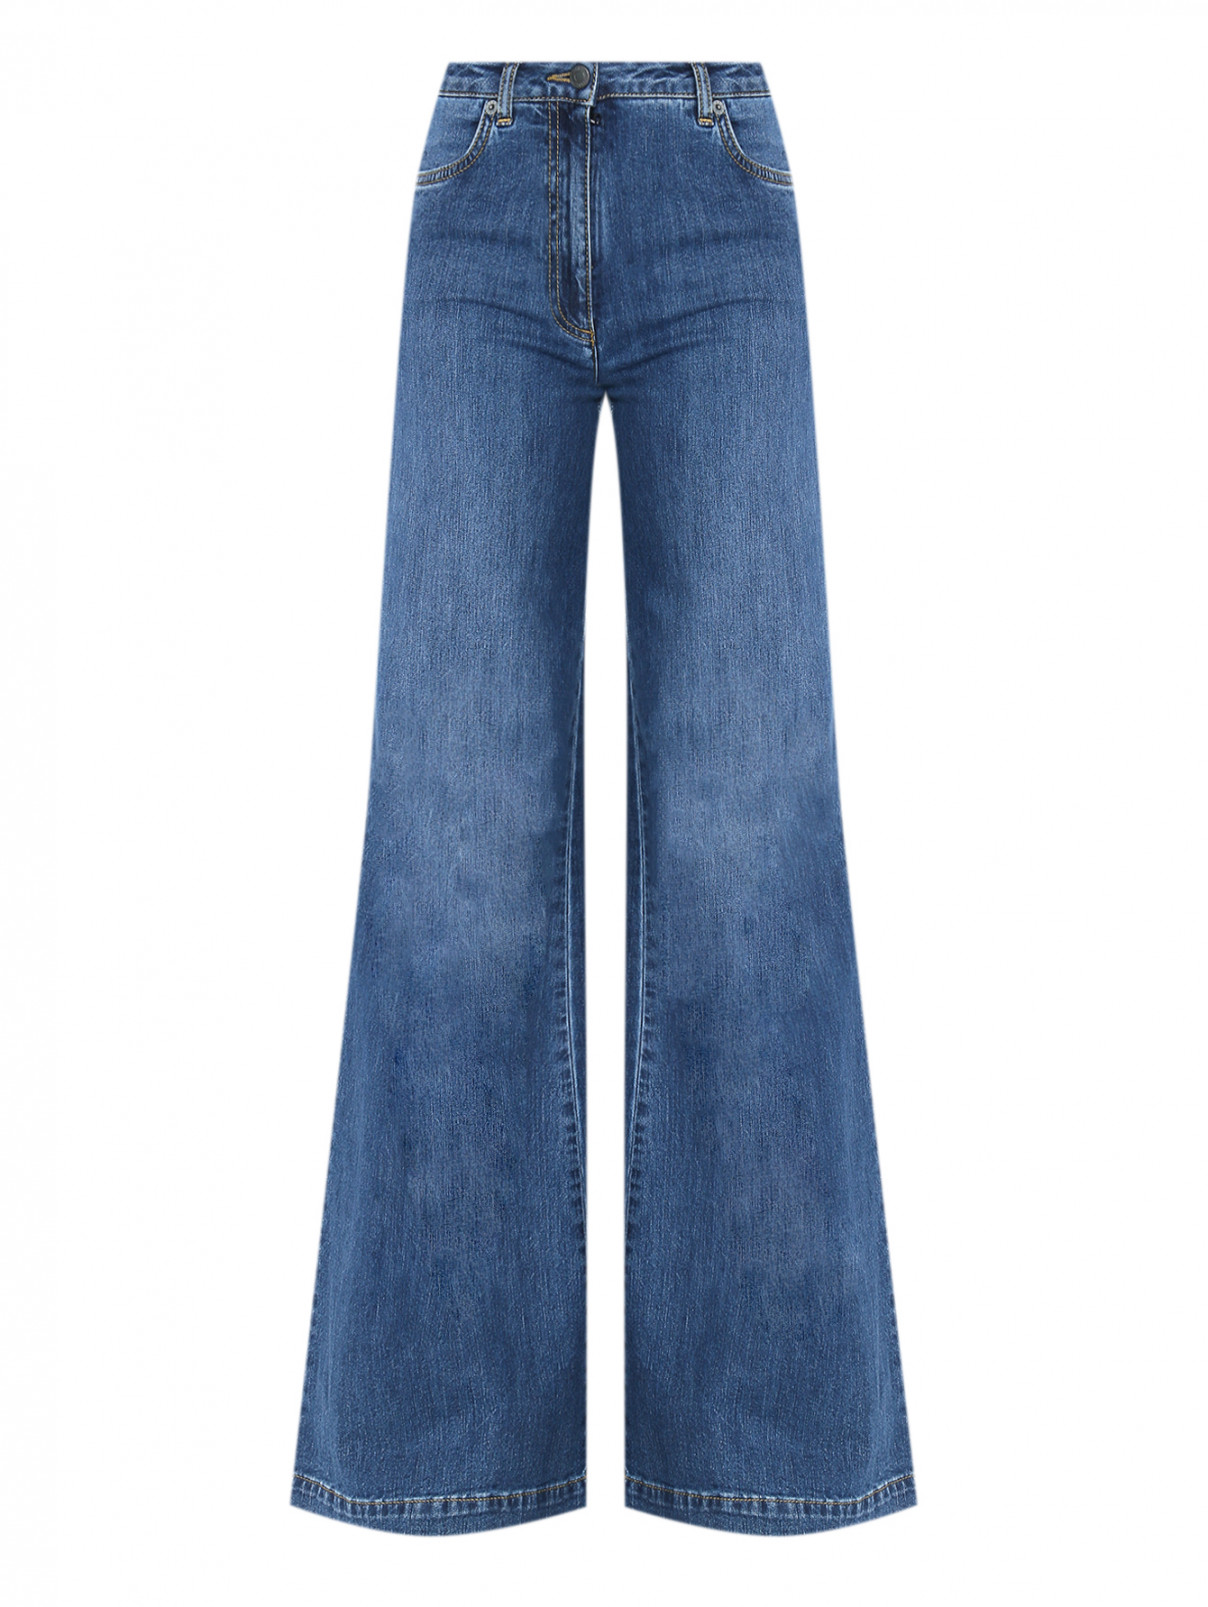 Расклешенные джинсы с карманами Moschino  –  Общий вид  – Цвет:  Синий